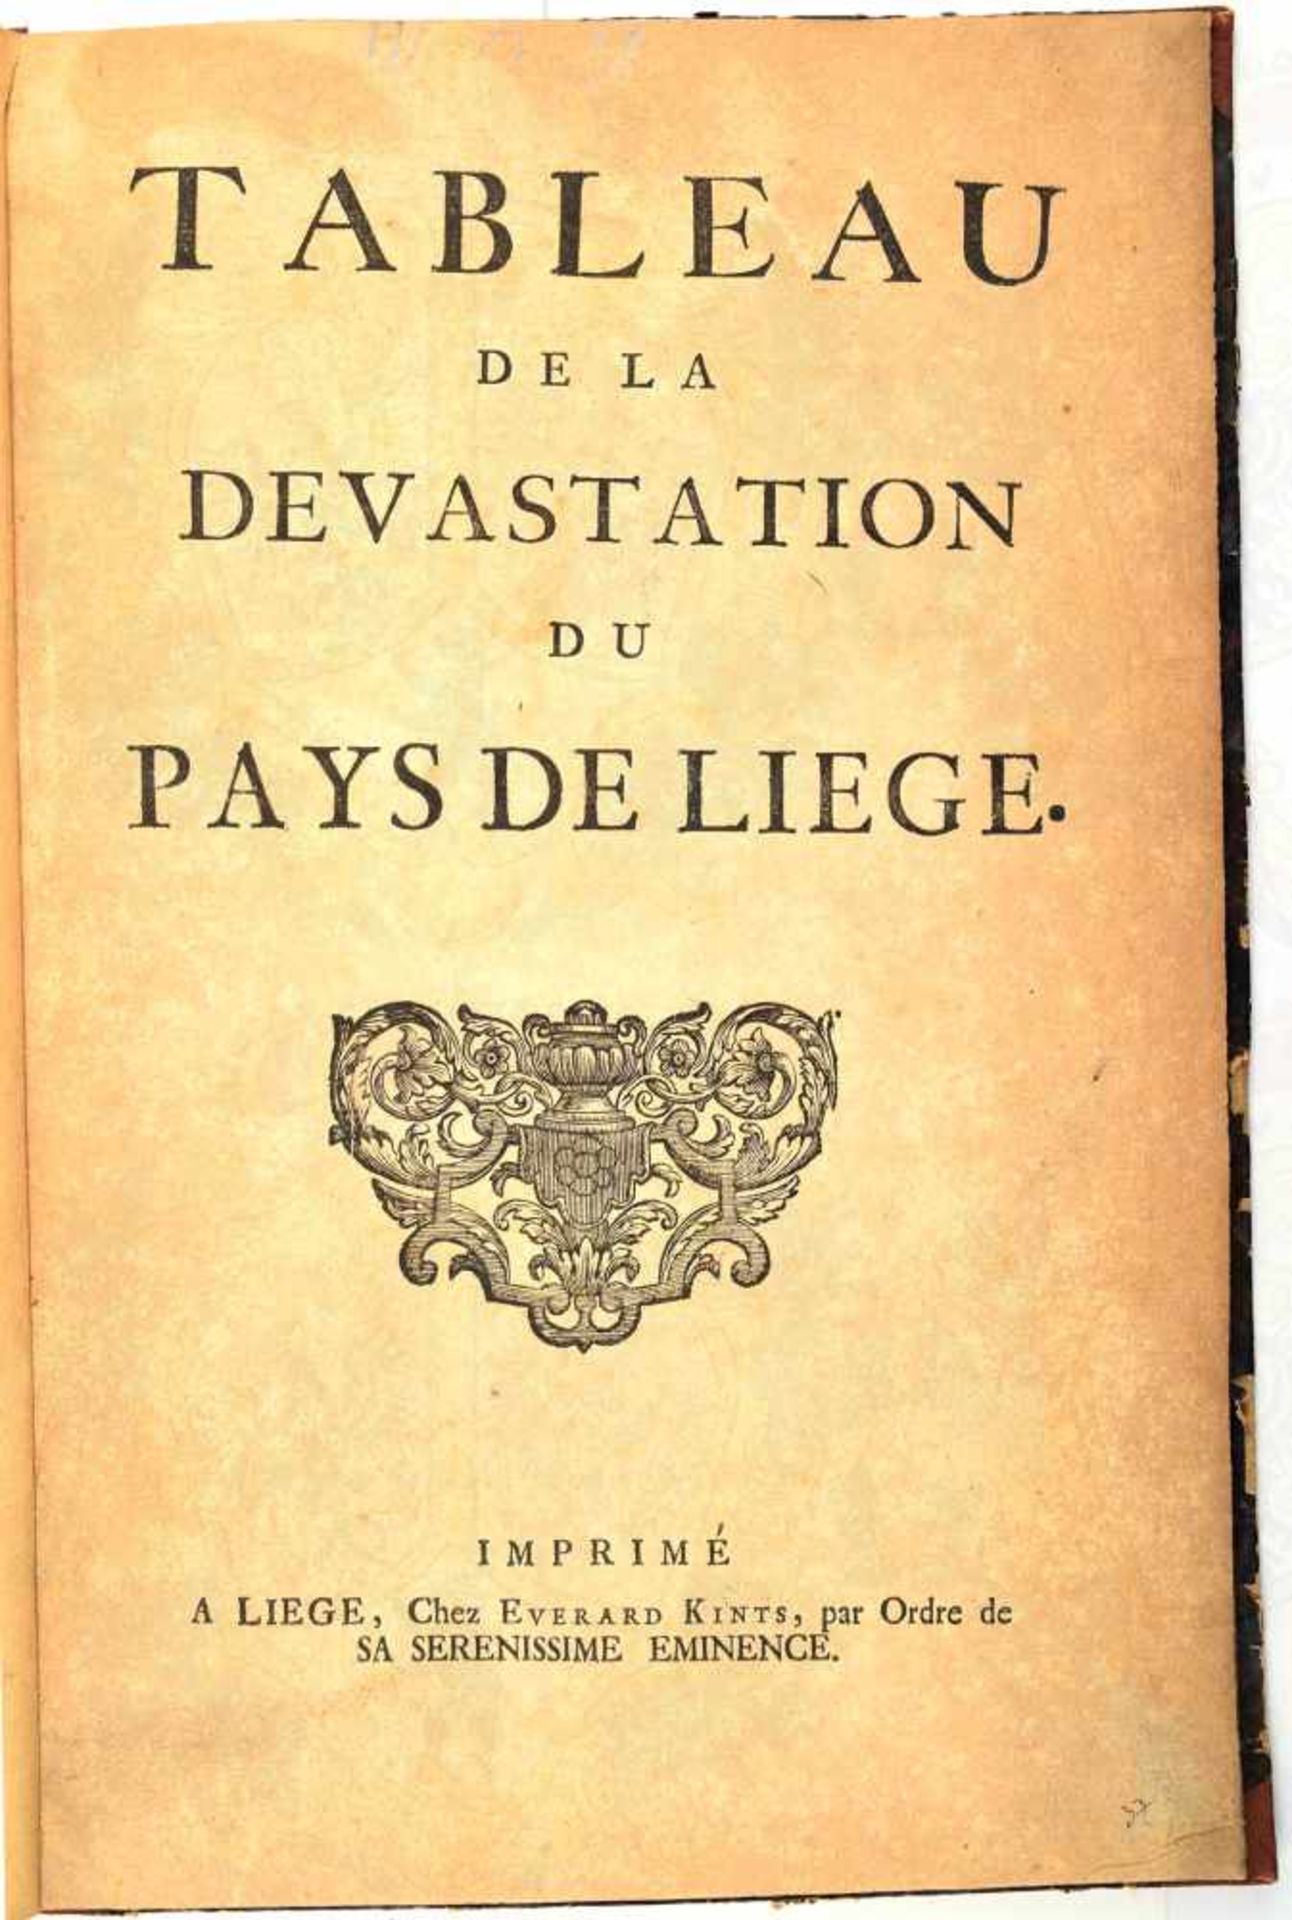 TABLEAU DE LA DEVASTATION DU PAYS DE LIEGE, (Aufzeichnung über die Verwüstung des Landes Lüttich),